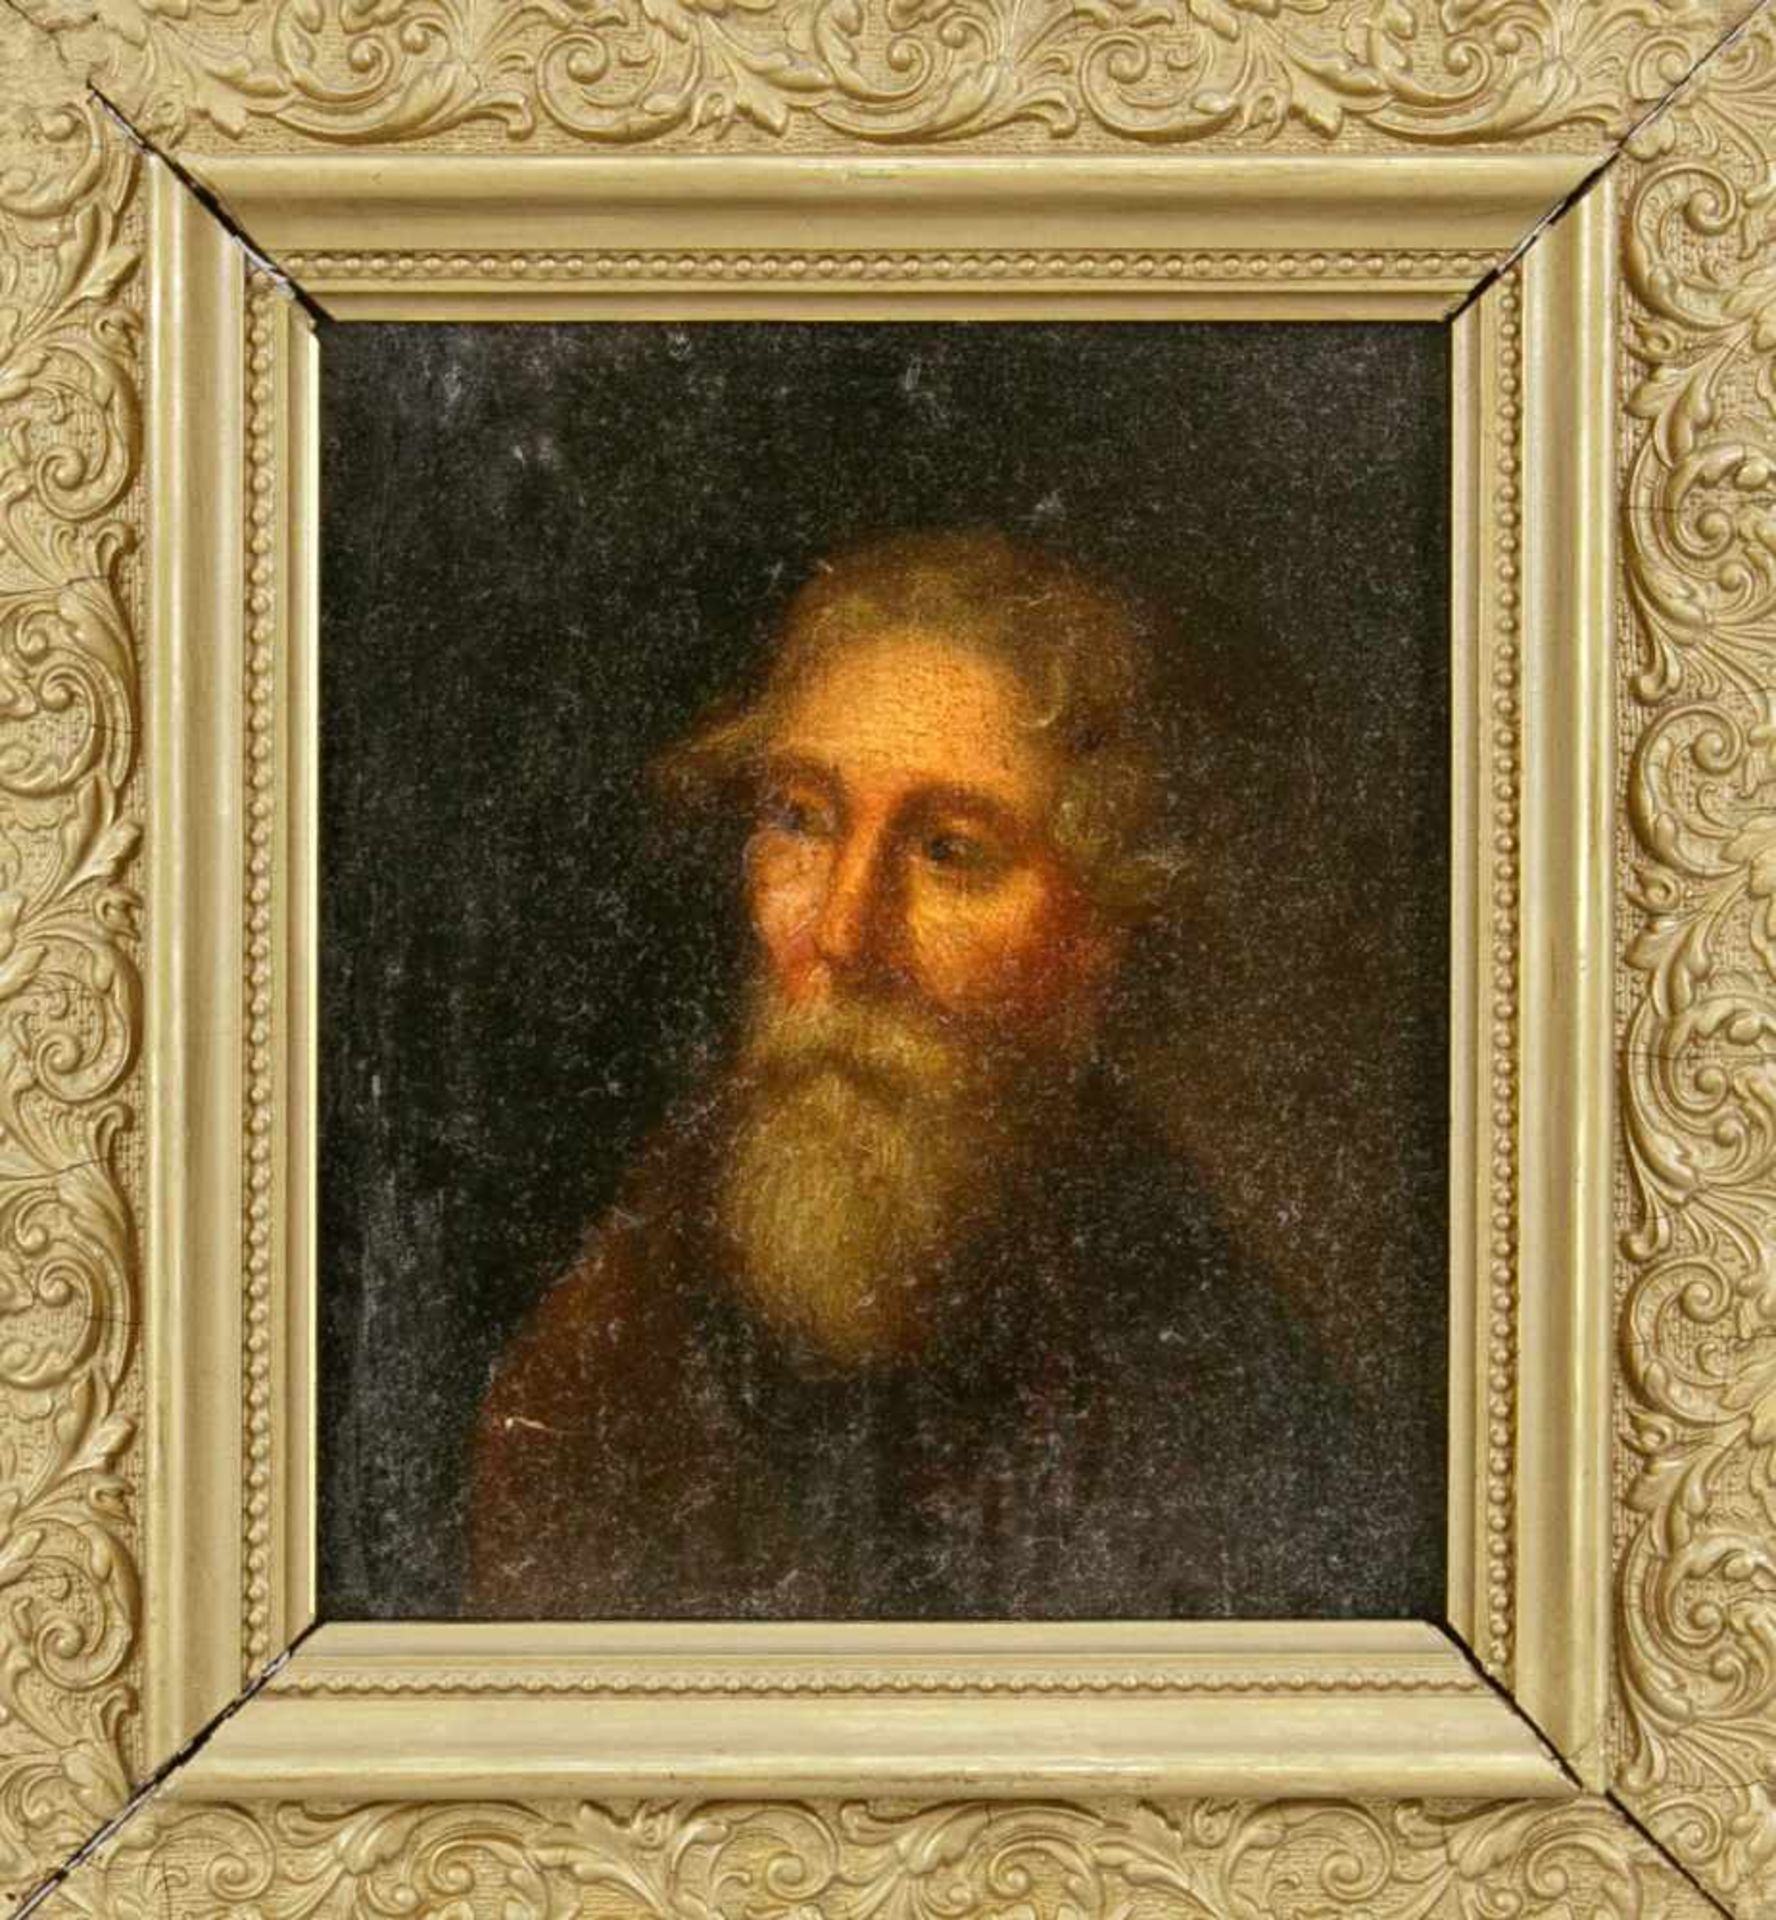 Zwei Herrenportraits des 18. Jh., kleine Kopie nach dem Selbstportrait Tintorettos in Ölauf Holz,